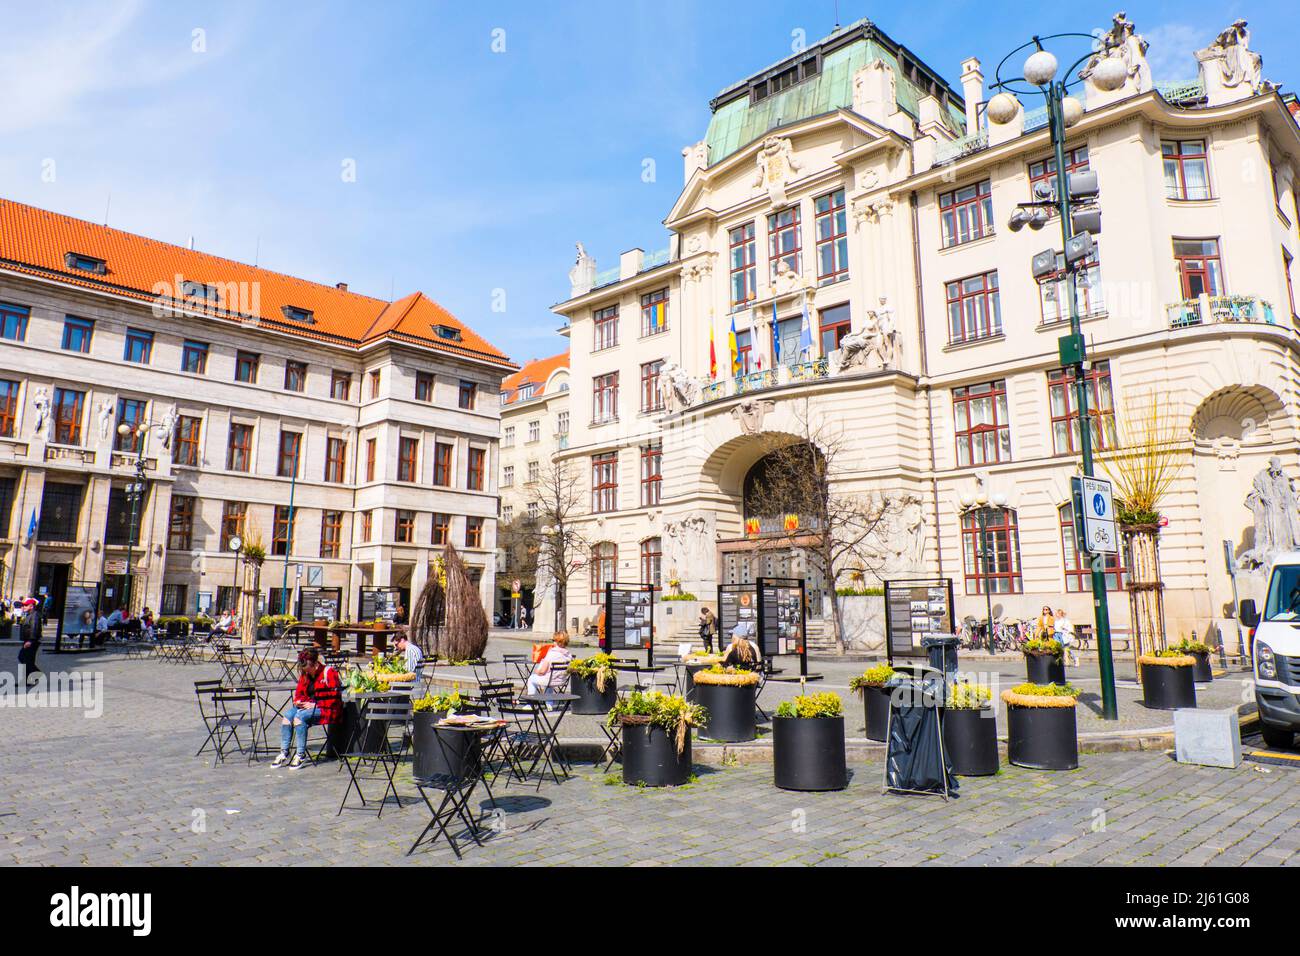 Marianske namesti, vieille ville, Prague, République Tchèque Banque D'Images